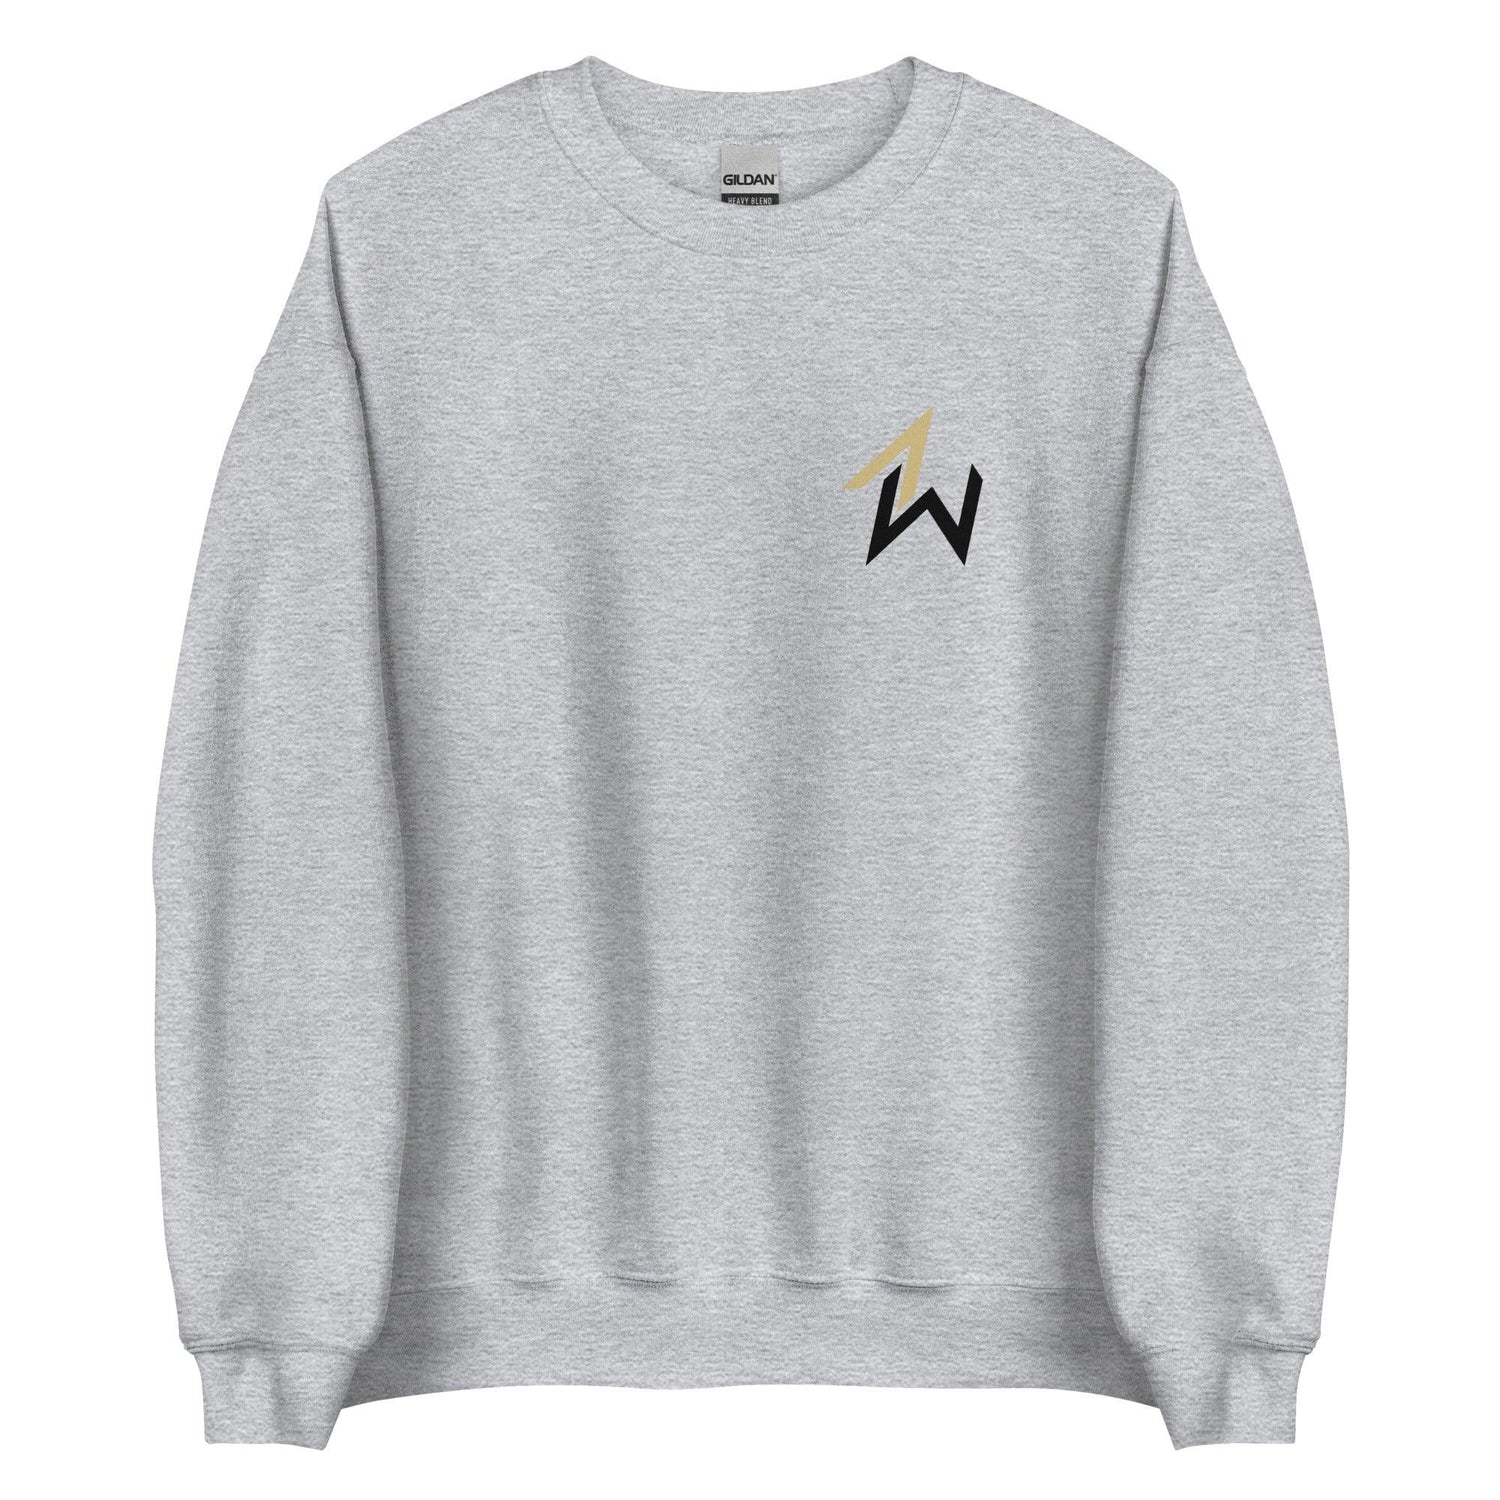 Austin Williams "Essential" Sweatshirt - Fan Arch